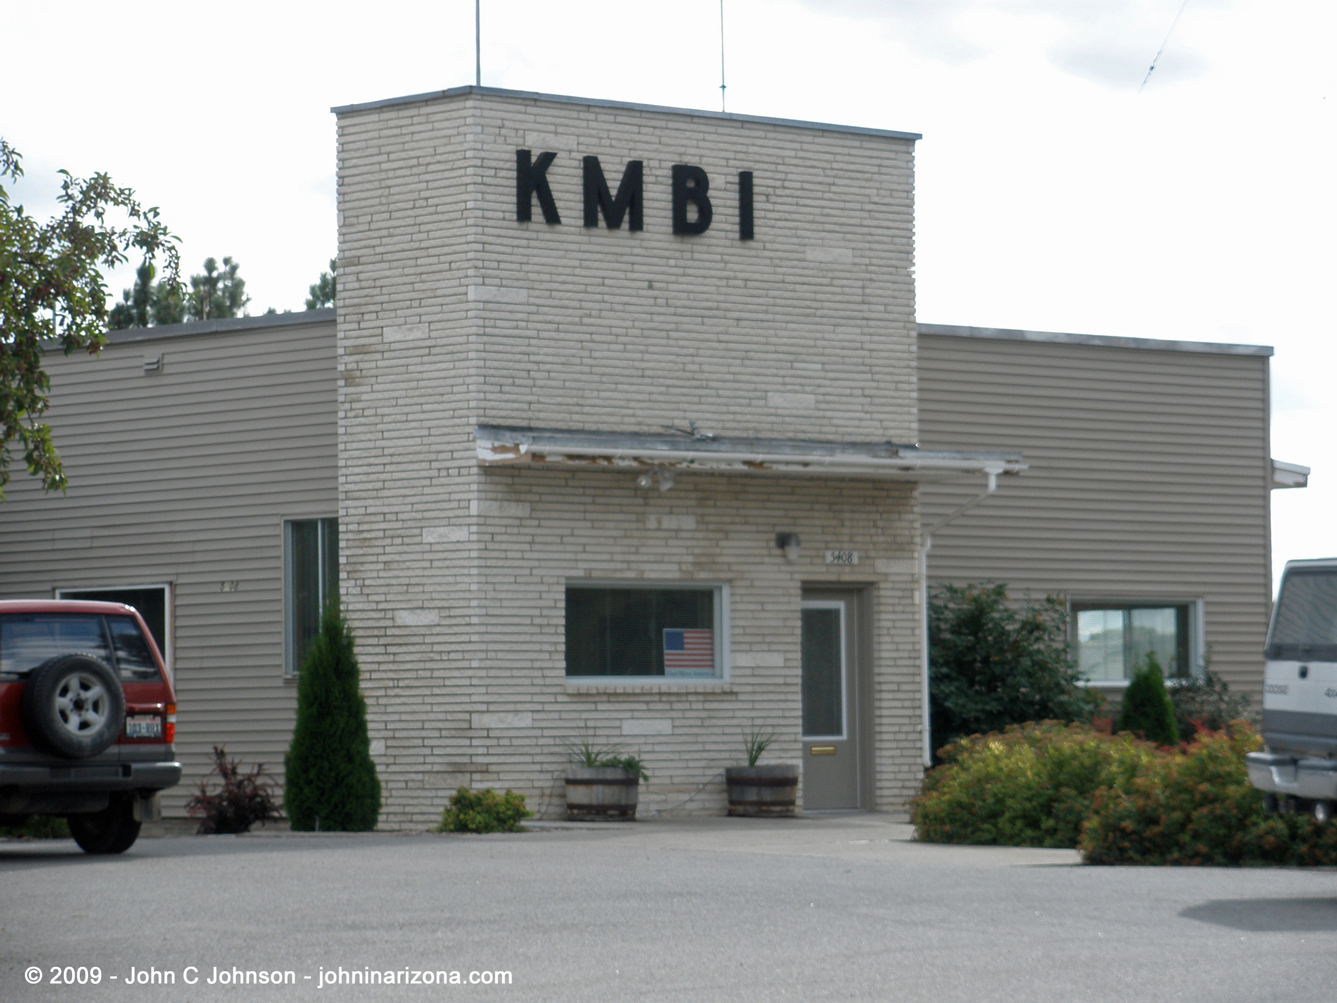 KMBI Radio 1330 Spokane, Washington